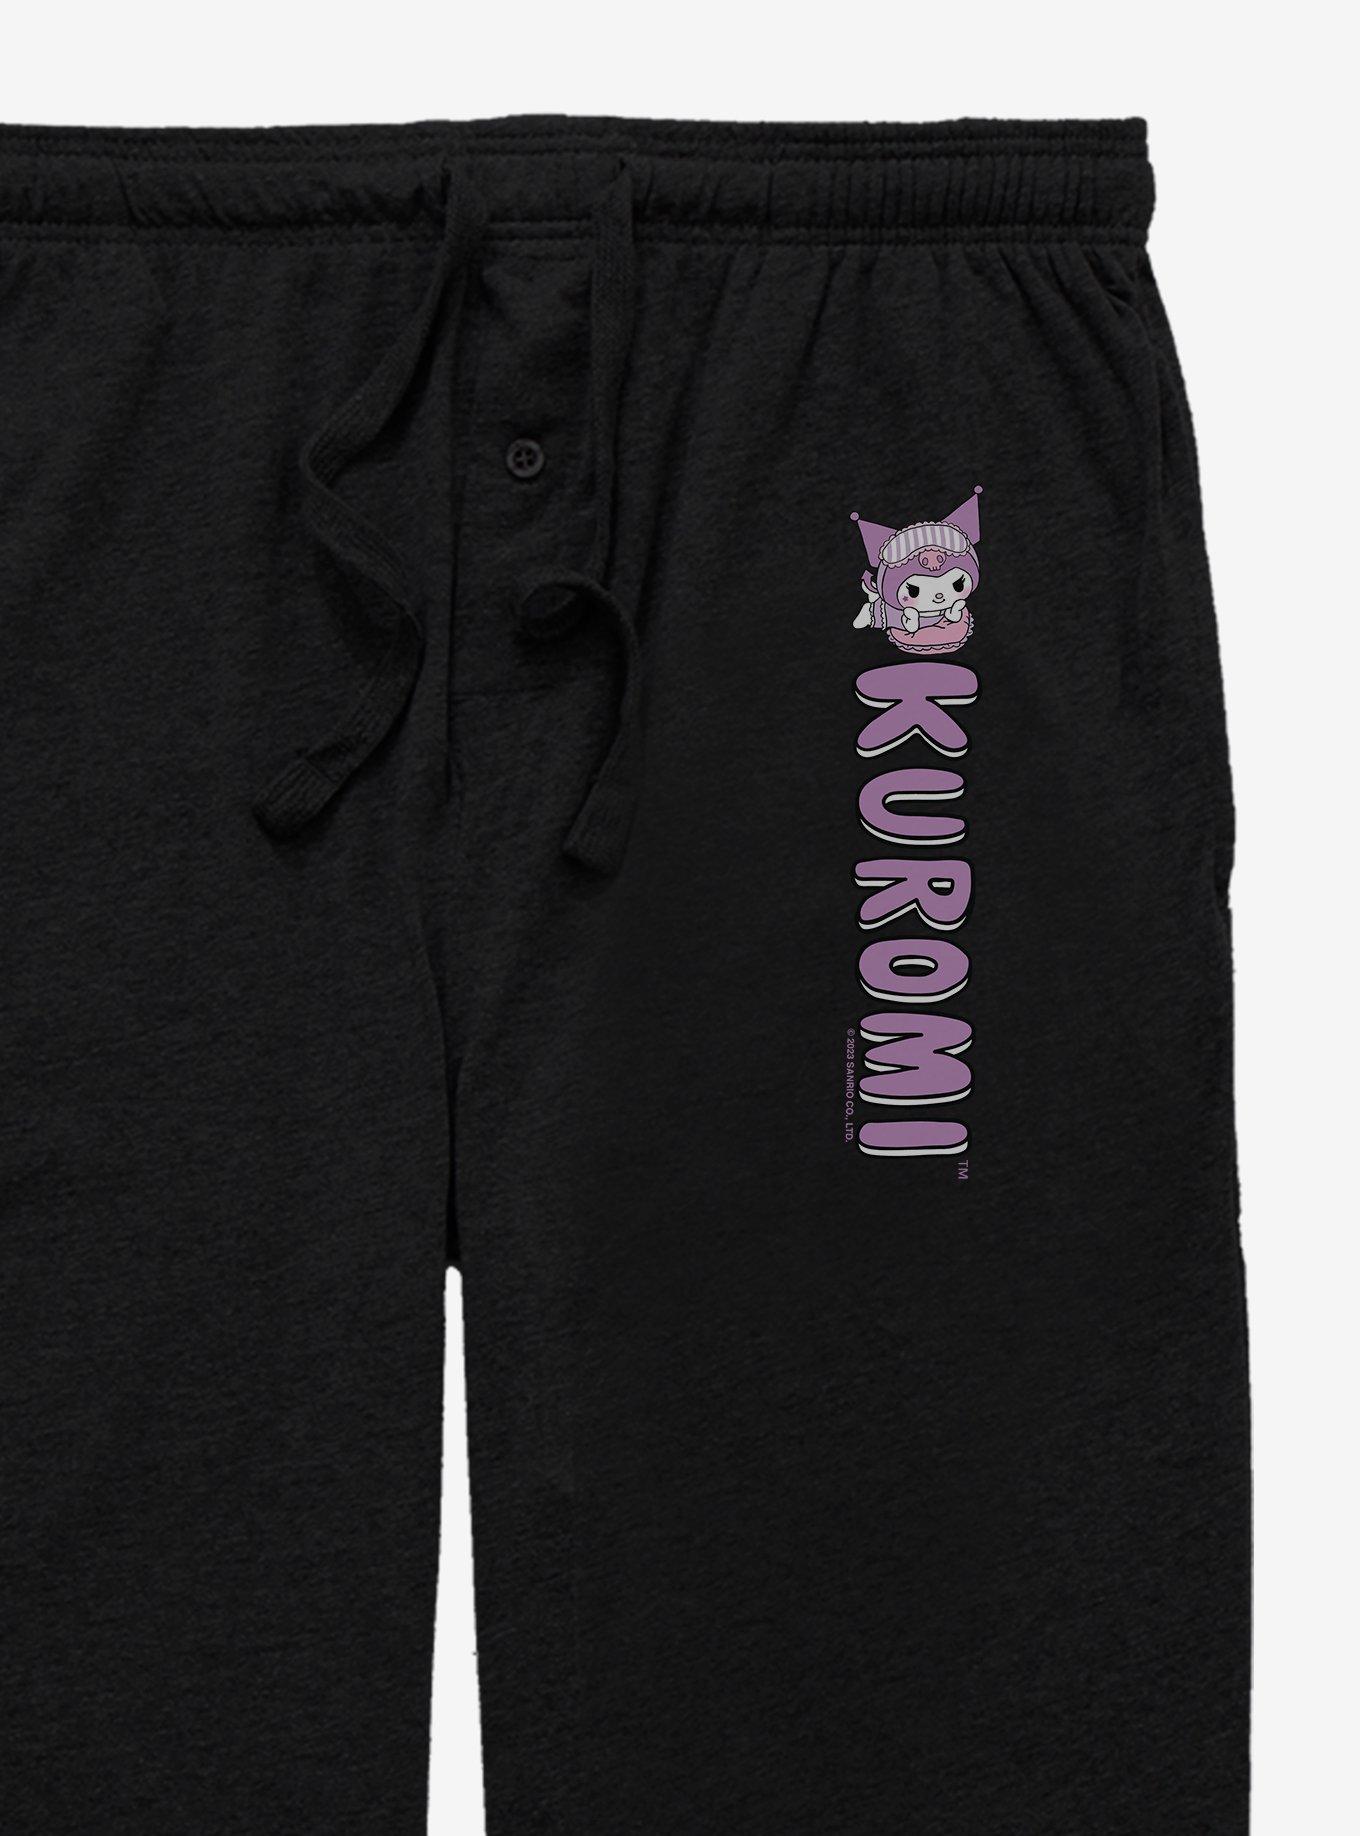 Kuromi Bedtime Pajama Pants, BLACK, alternate